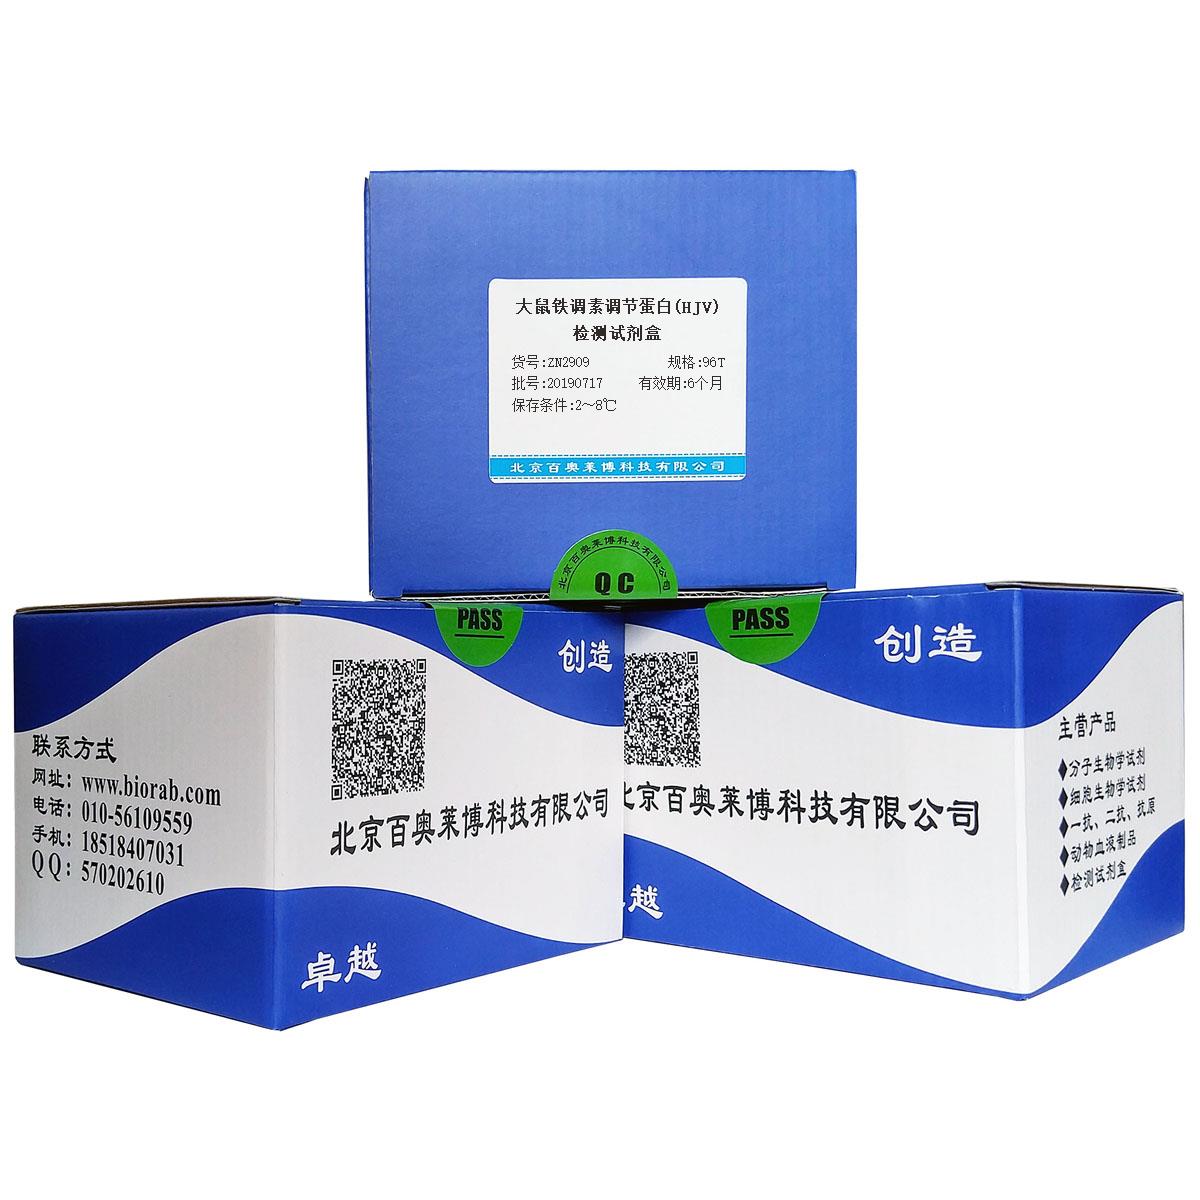 大鼠铁调素调节蛋白(HJV)检测试剂盒北京价格